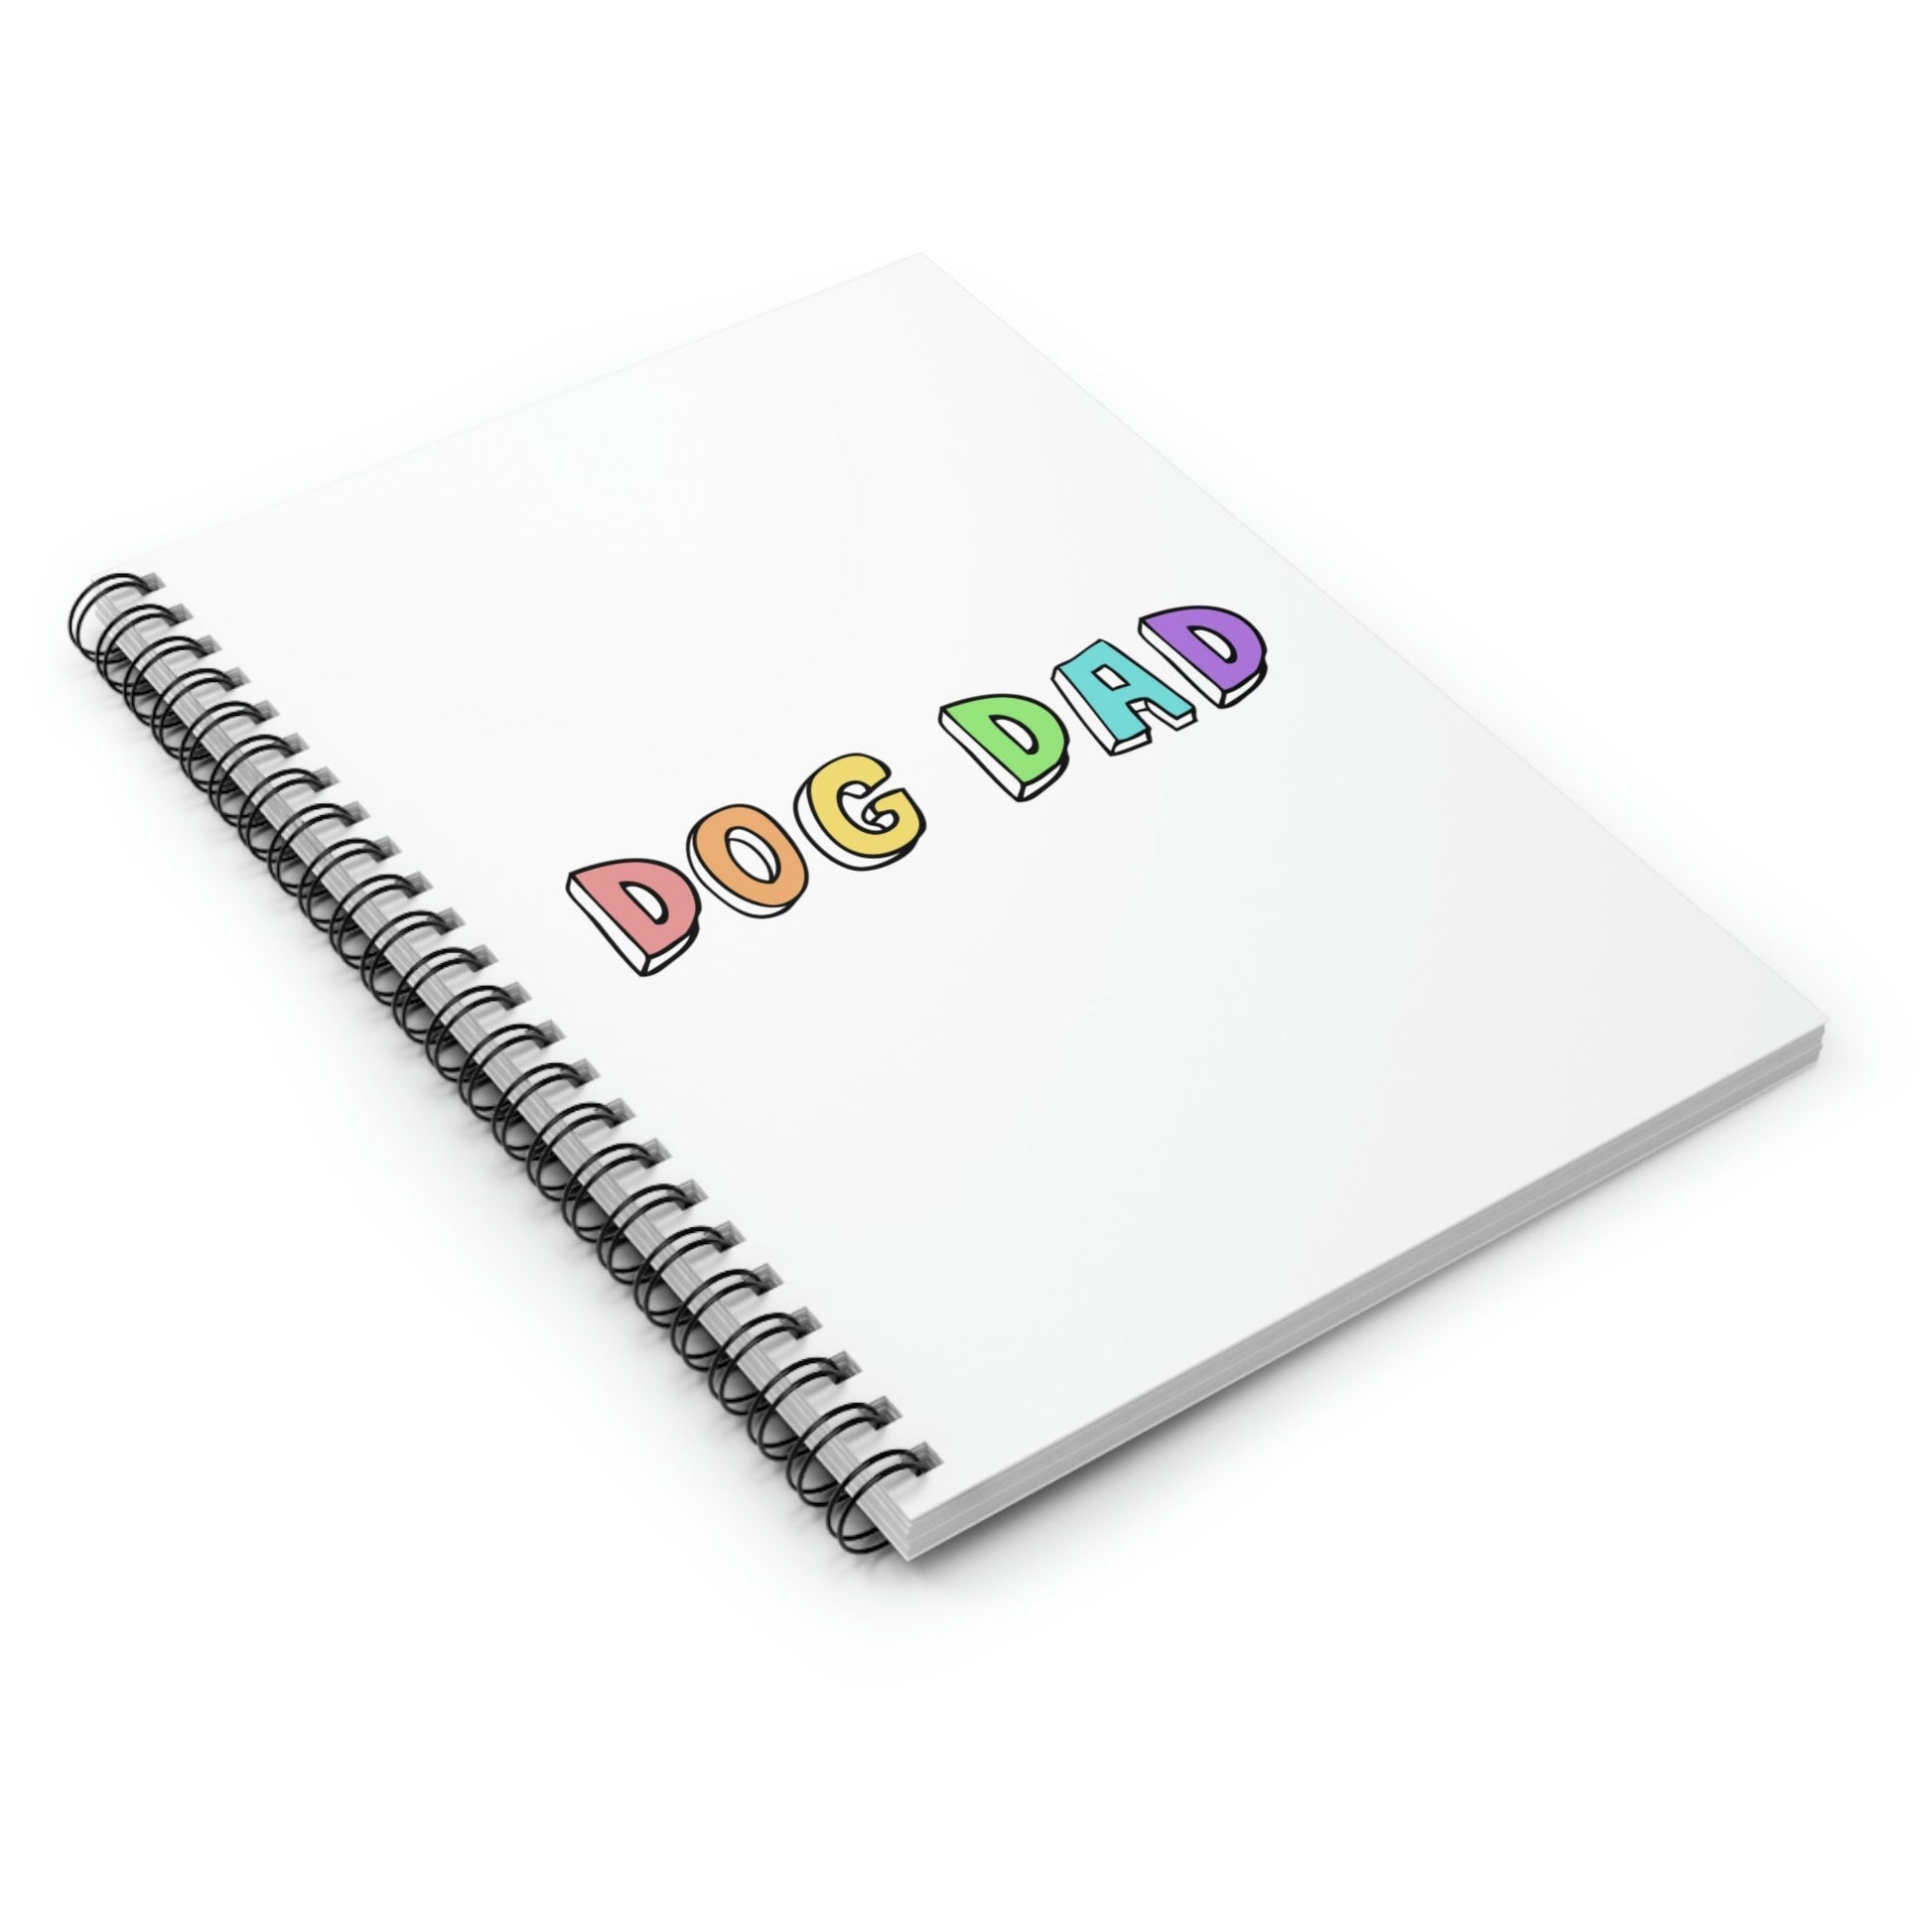 Dog Dad | Notebook - Detezi Designs-71886999573190868806